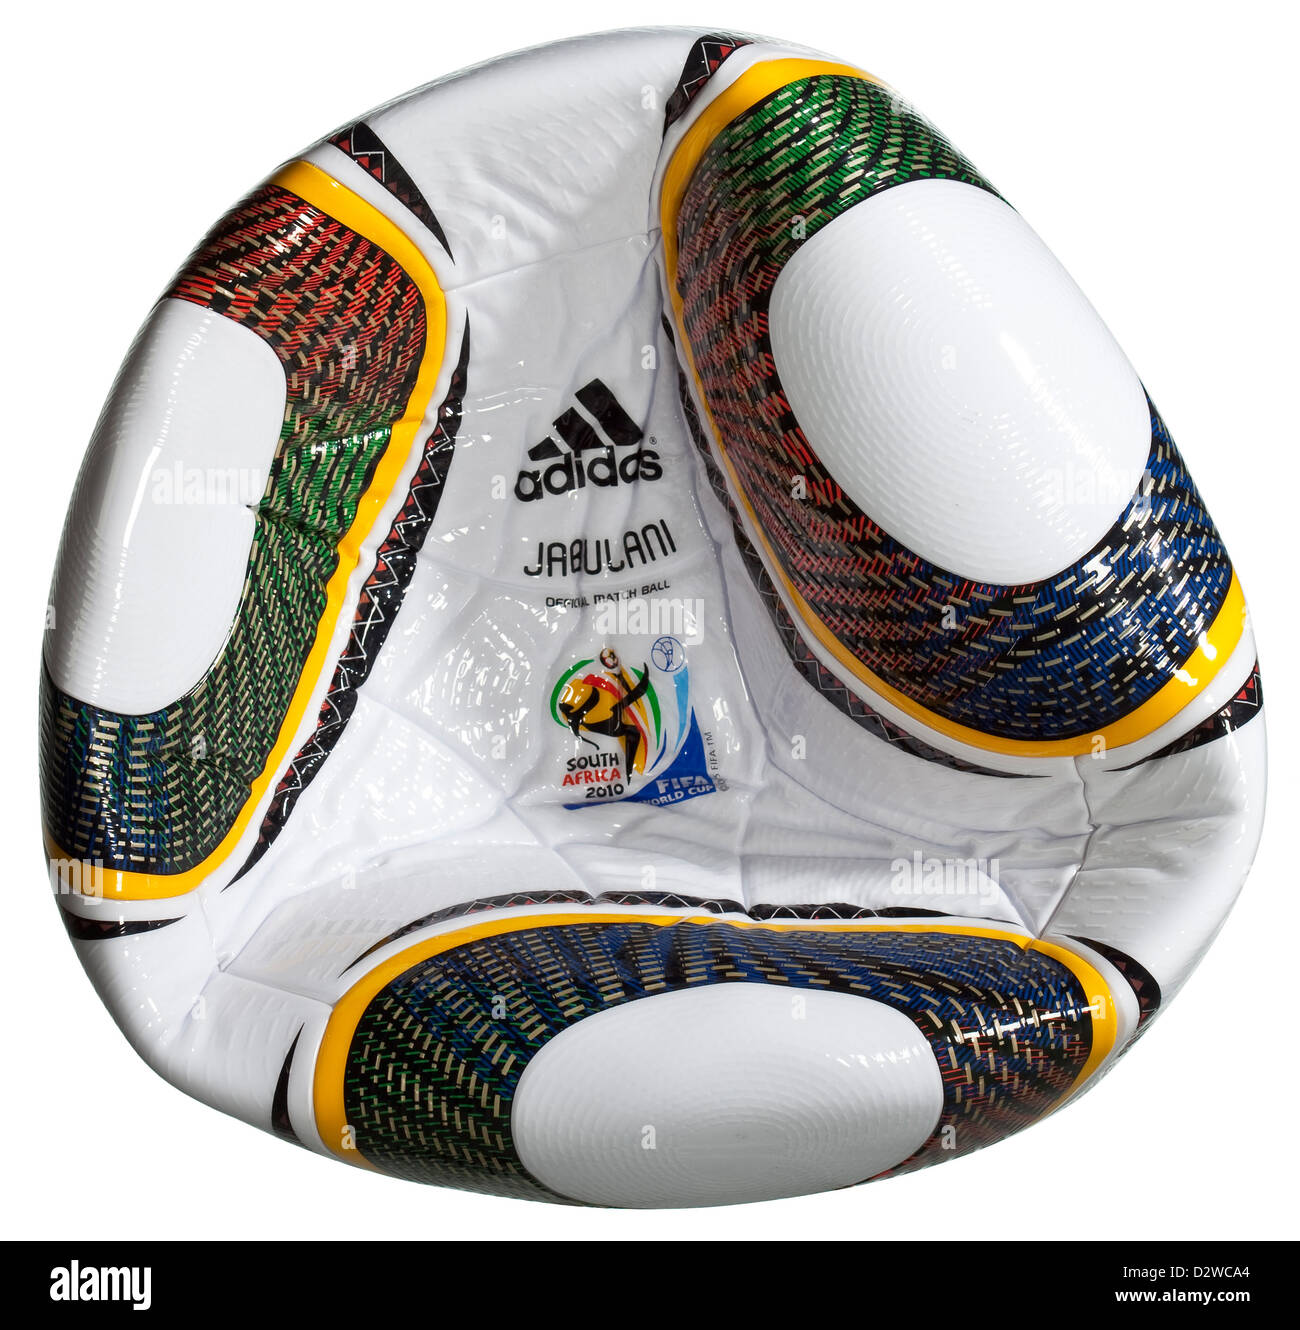 Germania, Adidas JABULANI, Palla ufficiale della Coppa del Mondo FIFA 2010 Foto Stock